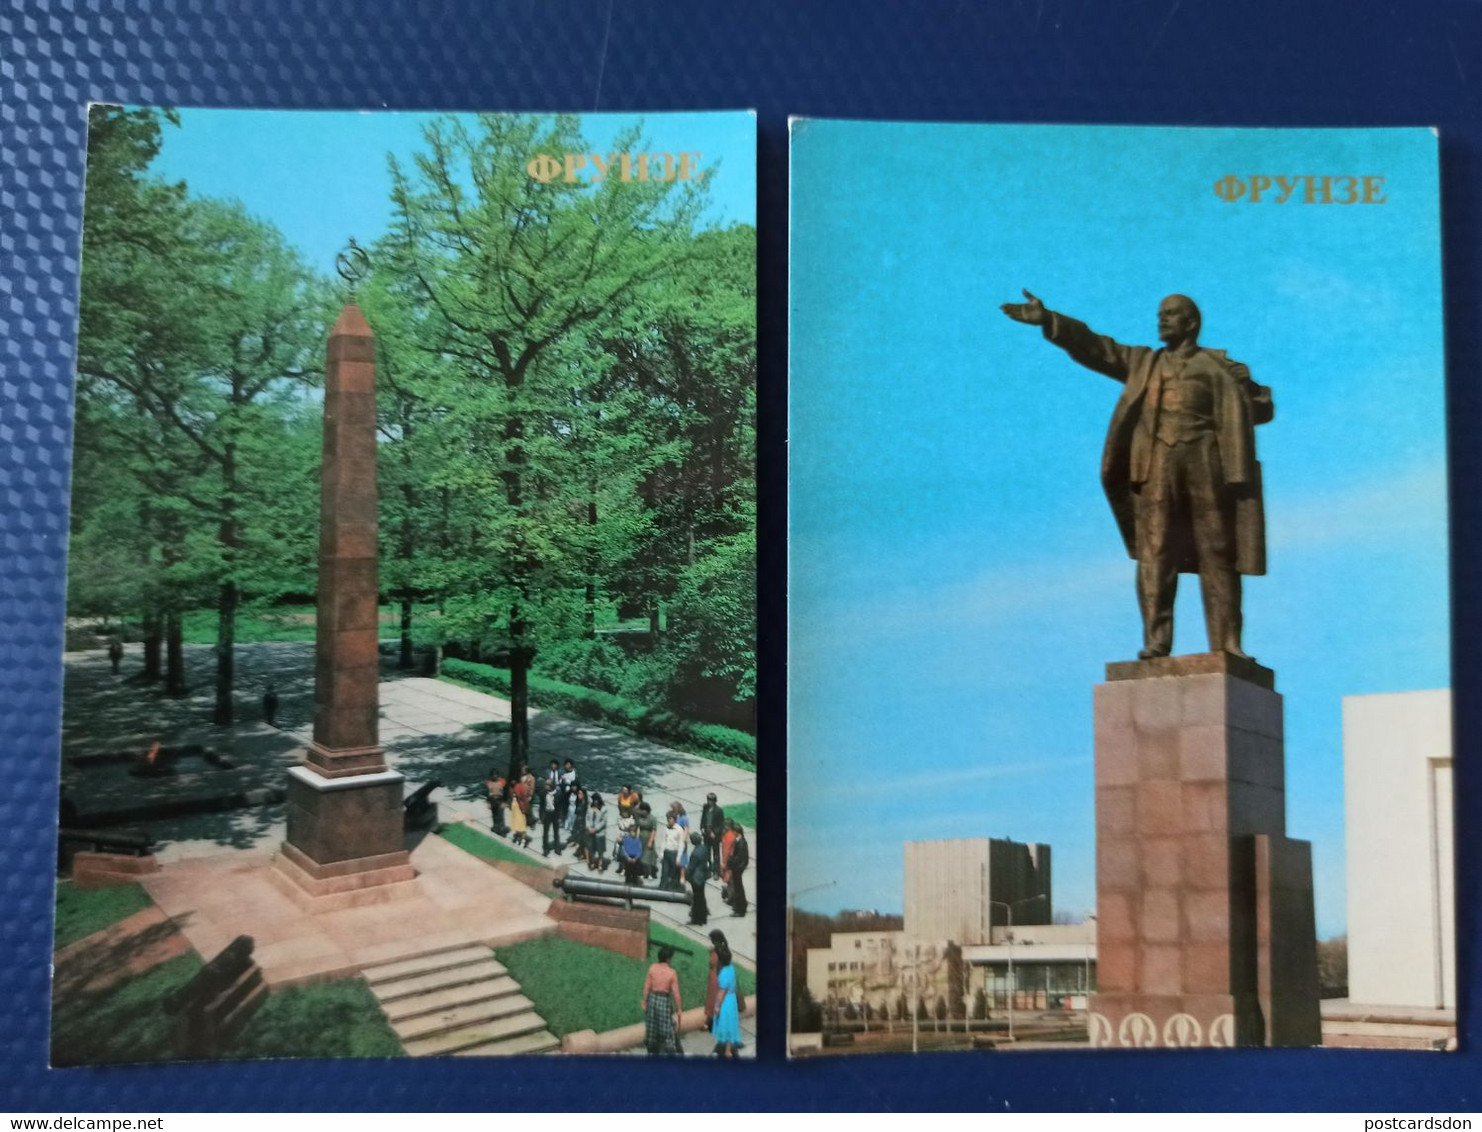 KYRGYZSTAN. Bishkek Capital (Frunze) 17 Postcards Lot USSR PC 1980s - Kirgisistan